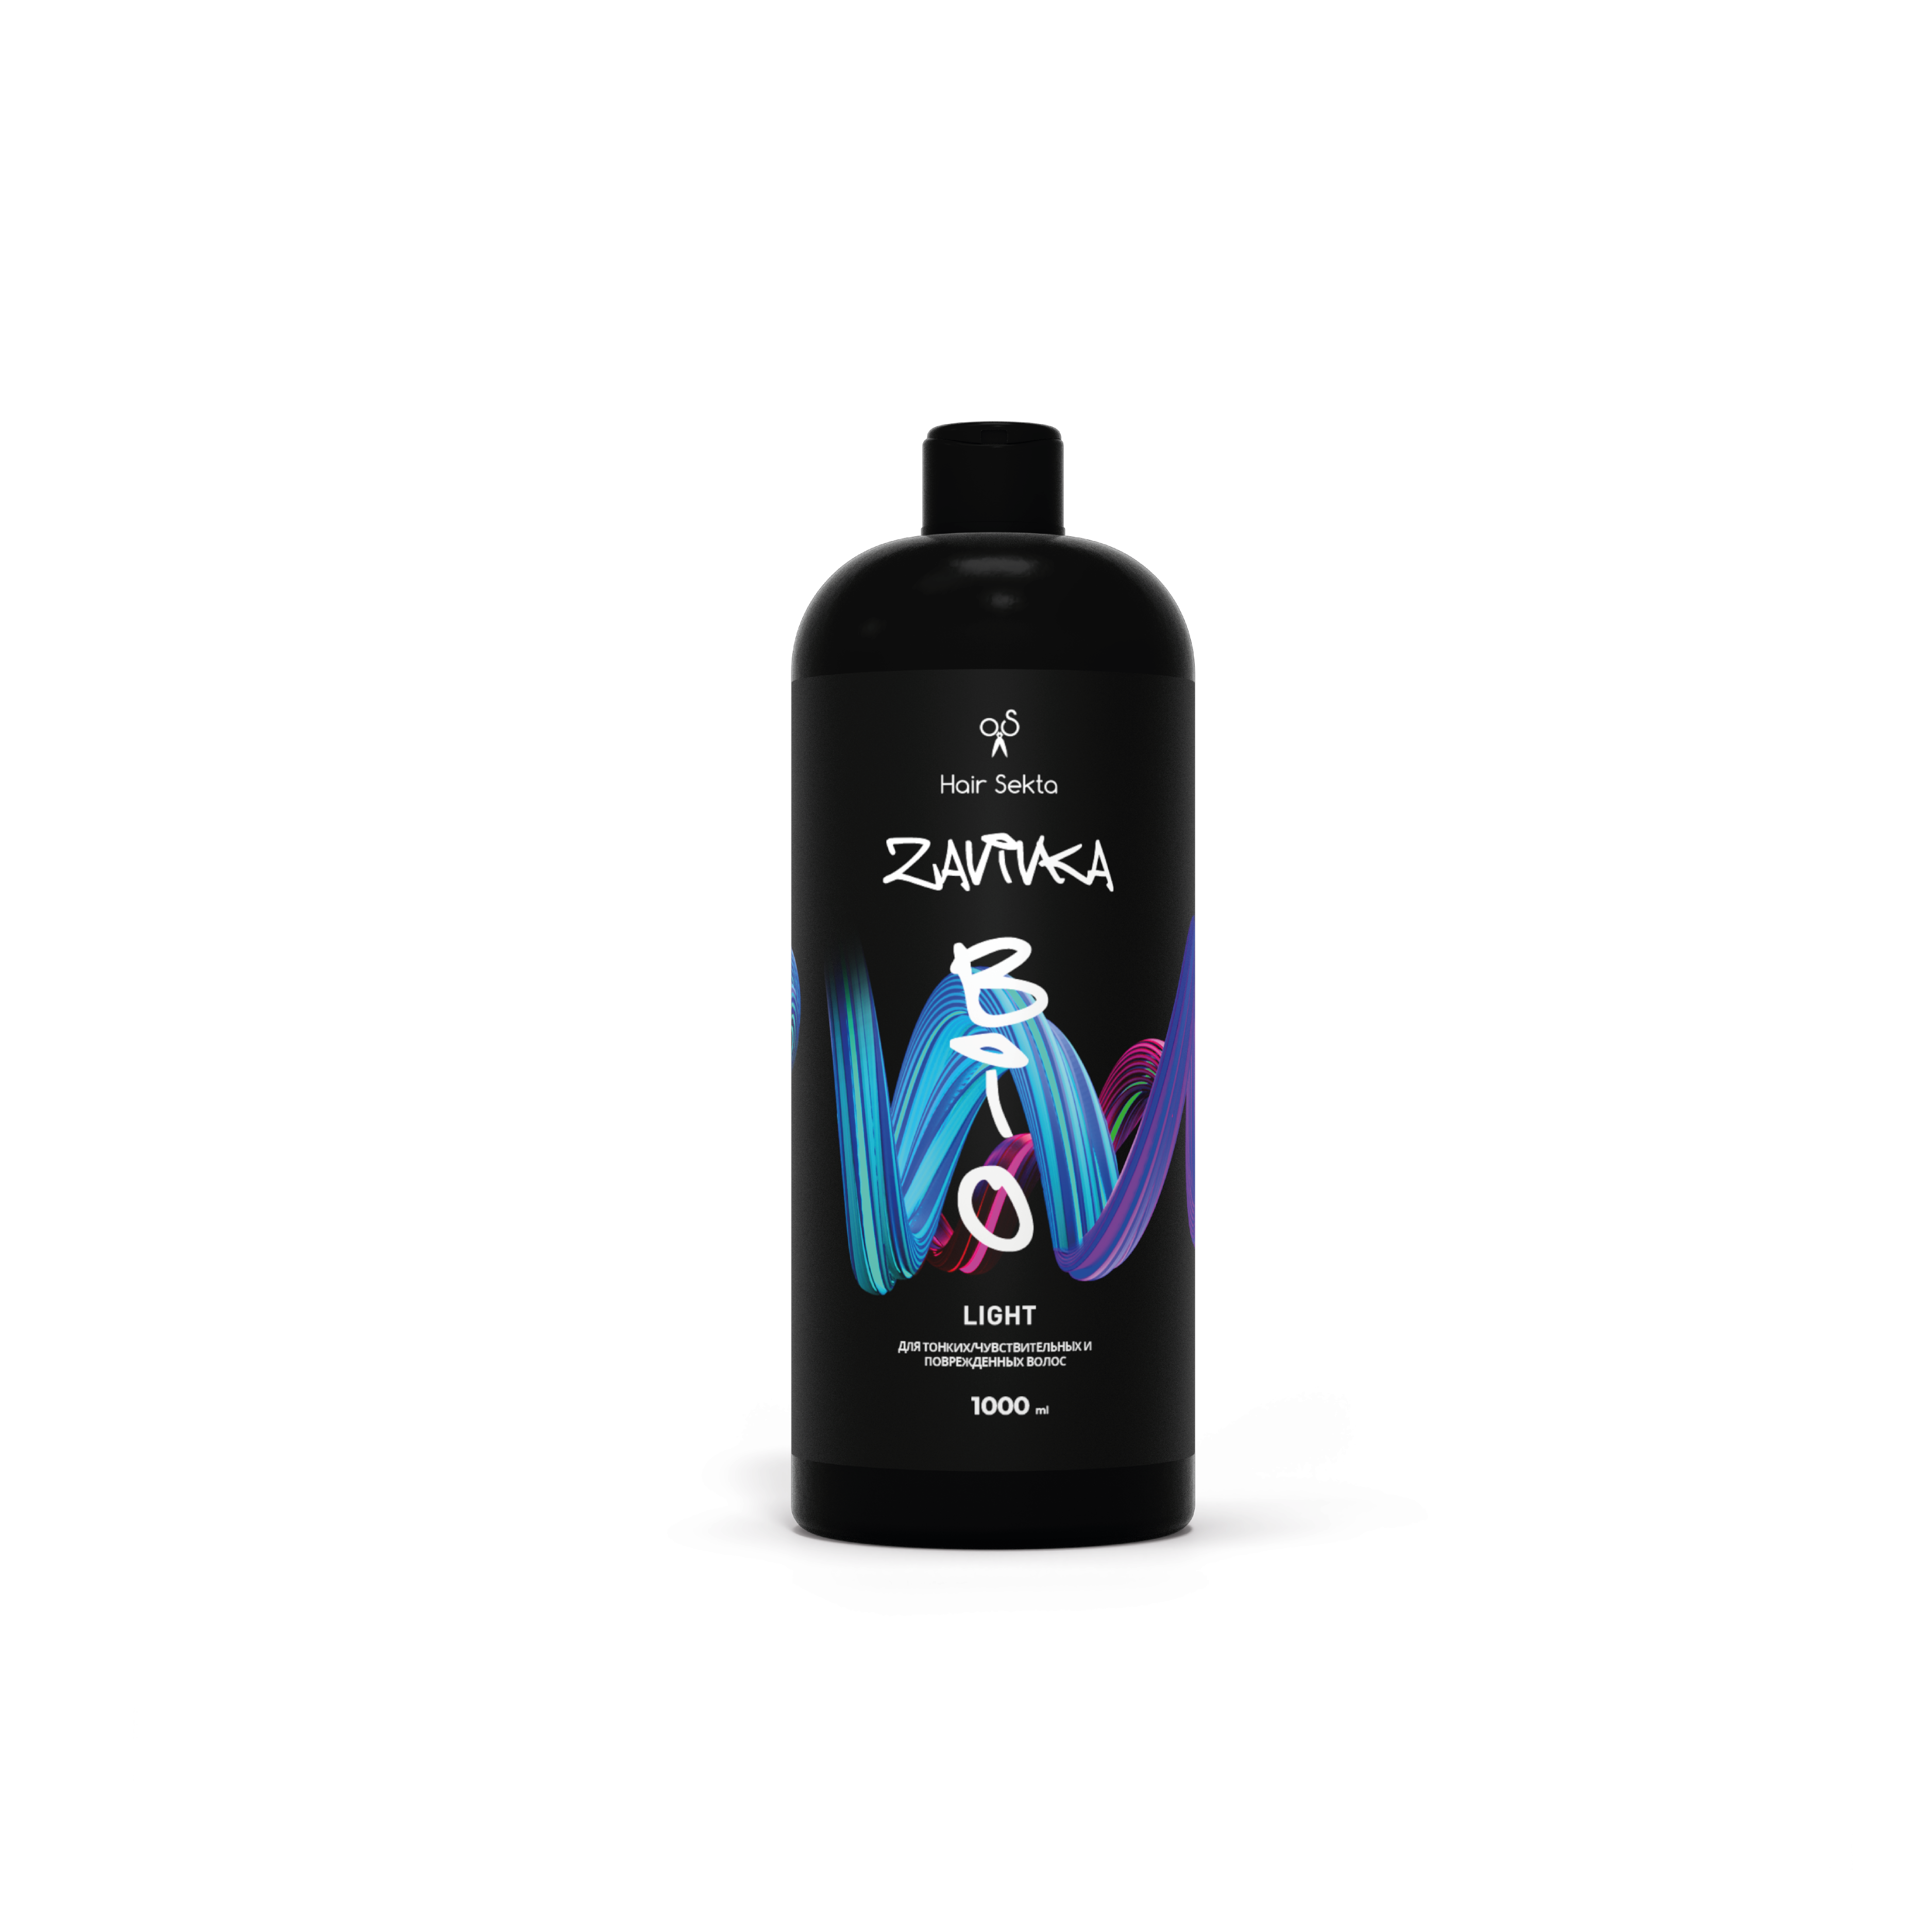 Биозавивка от Hair Sekta: Light для тонких/чувствительных и поврежденных волос 1000 мл